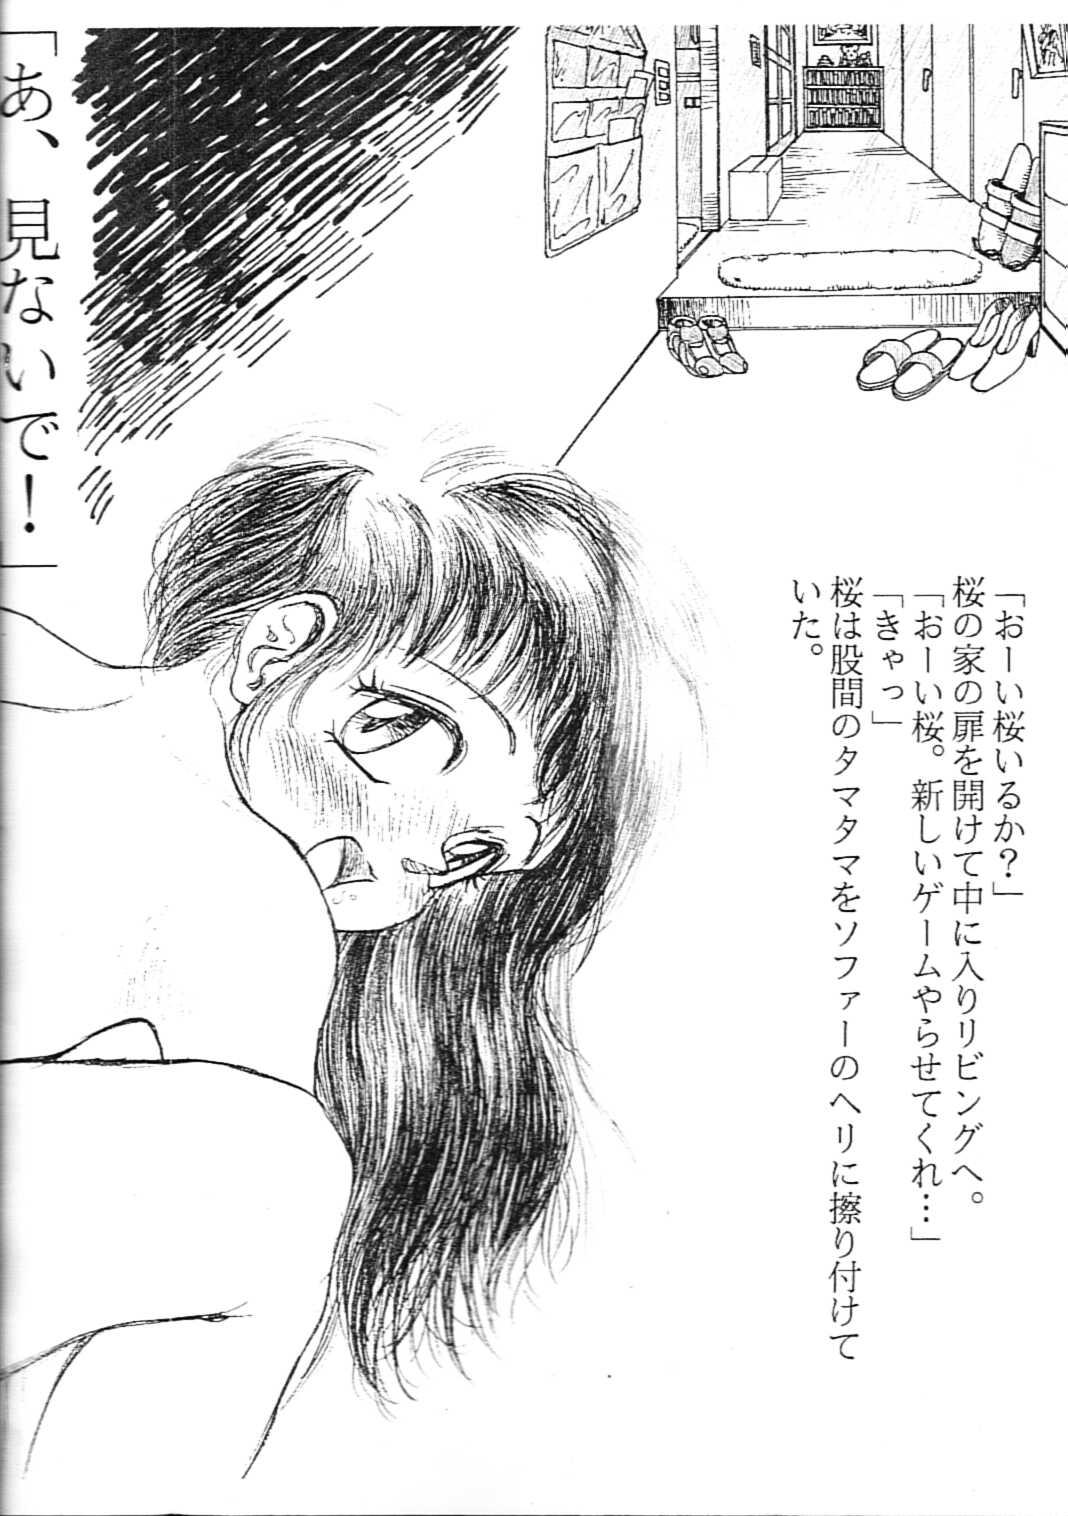 Amateur Pussy Sakuragai Ehonban - Barcode fighter Girlongirl - Page 2